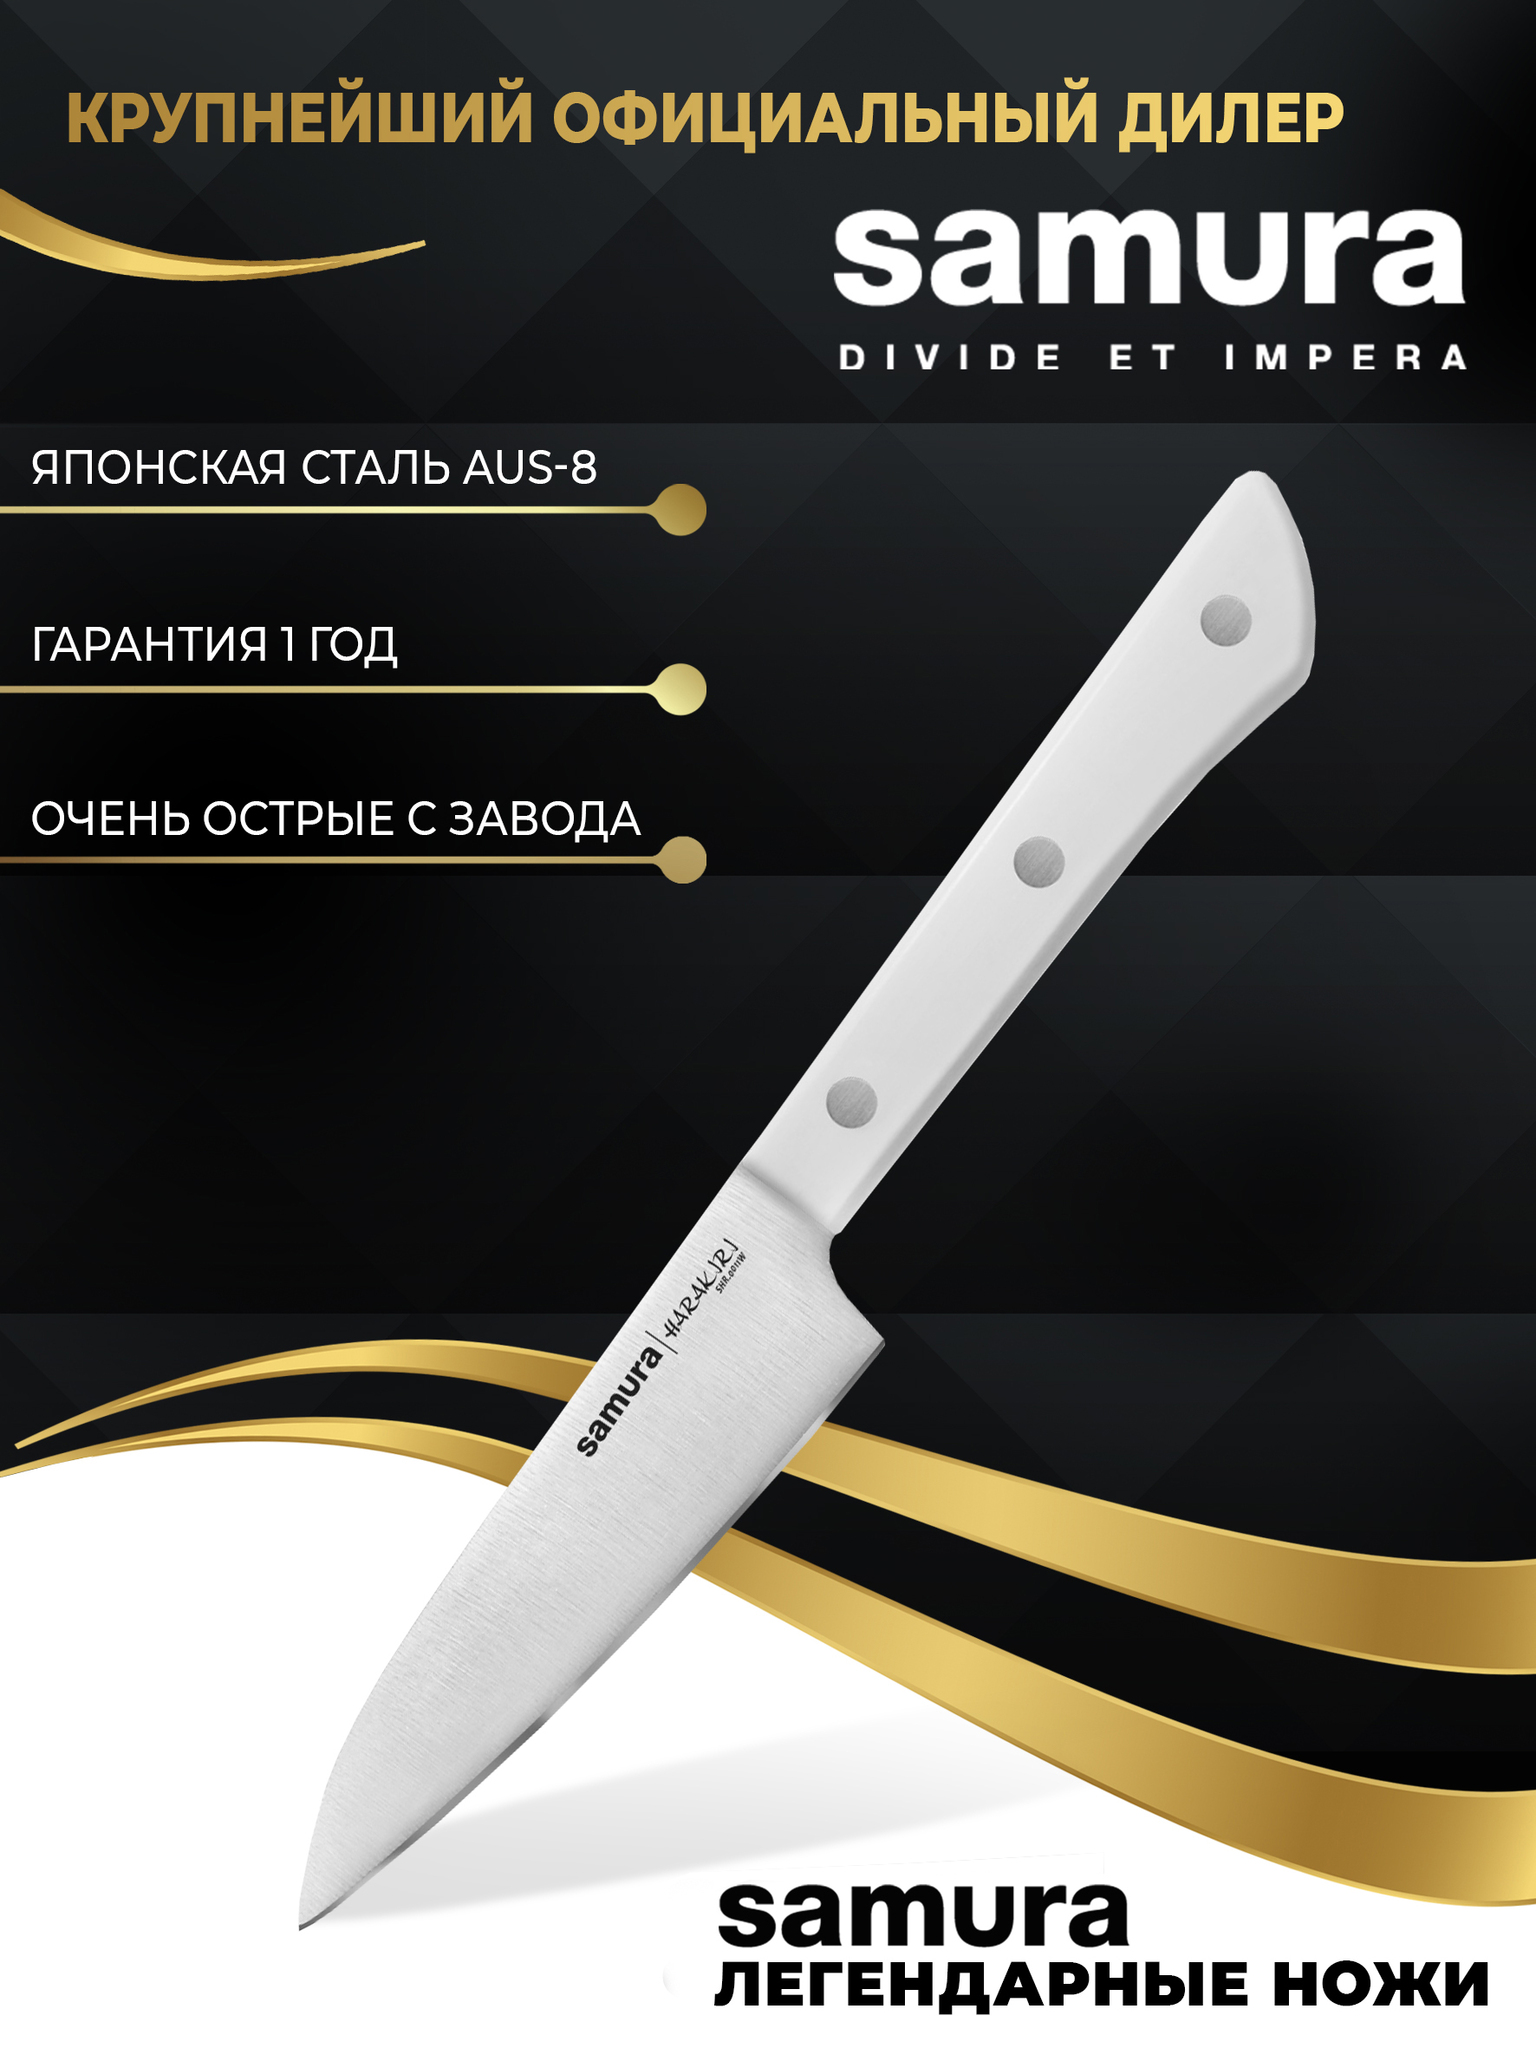 SAMURA PRO-S. Обзор японских кухонных ножей из стали AUS-8